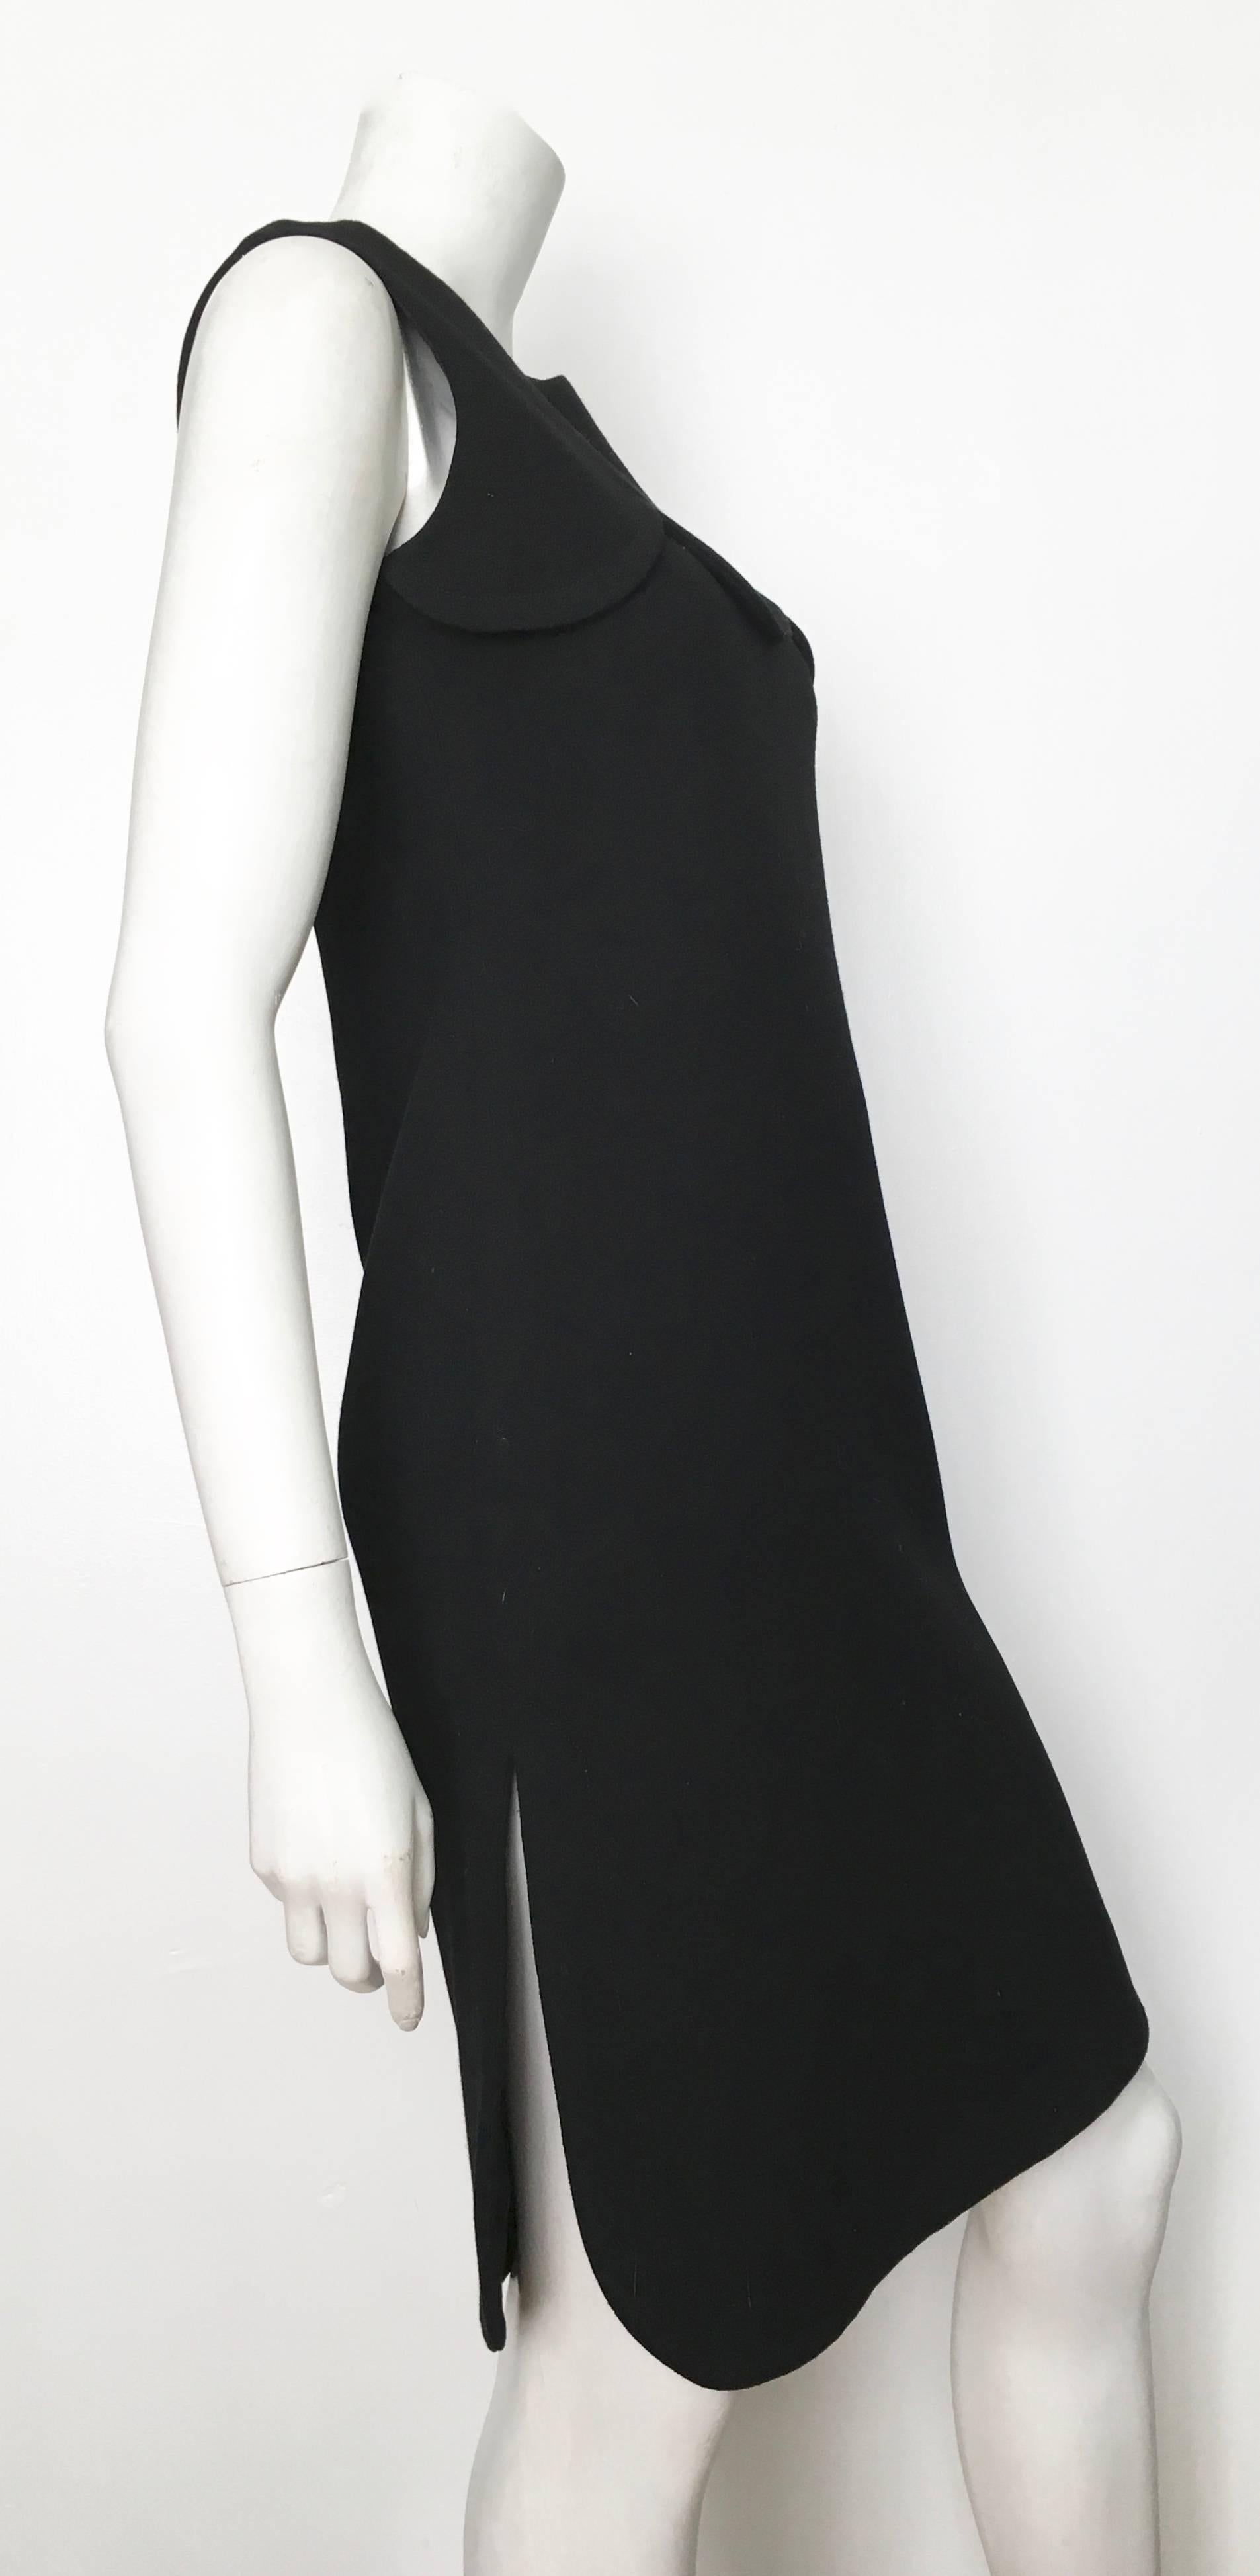 Pierre Cardin for Saks Fifth Avenue 1971 Black Wool Sleeveless Dress Size 6. 9